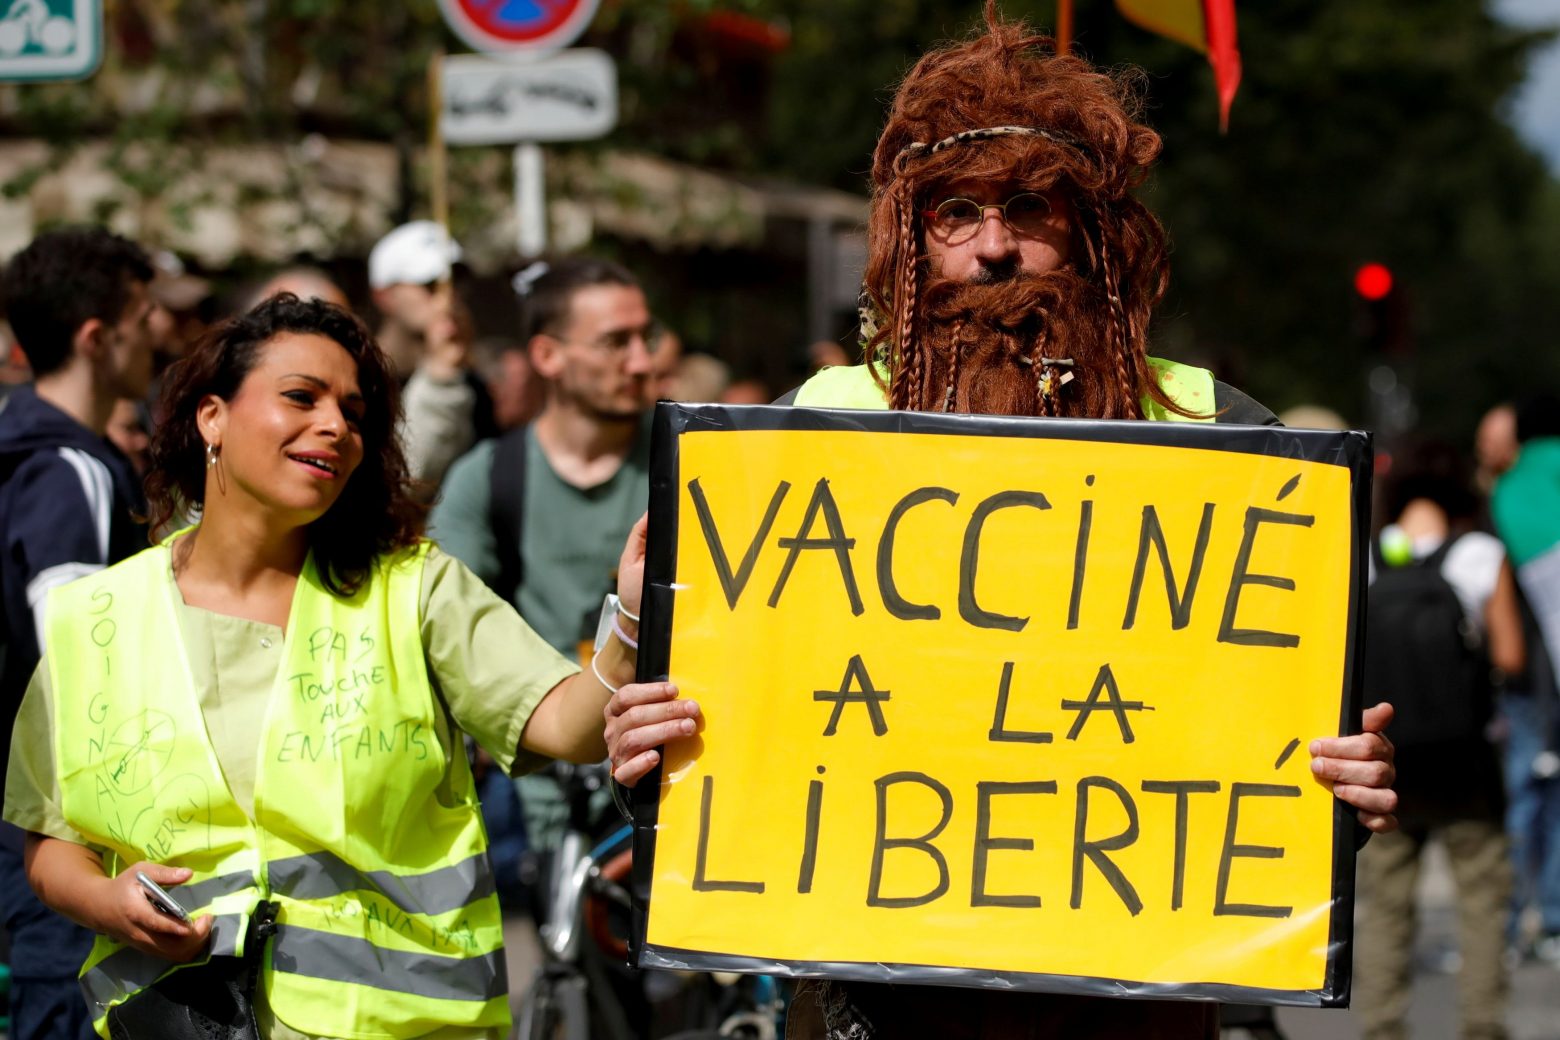 Γαλλία - Ευρωπαϊκό δικαστήριο απέρριψε προσφυγή 672 πυροσβεστών κατά της υποχρέωσης εμβολιασμού